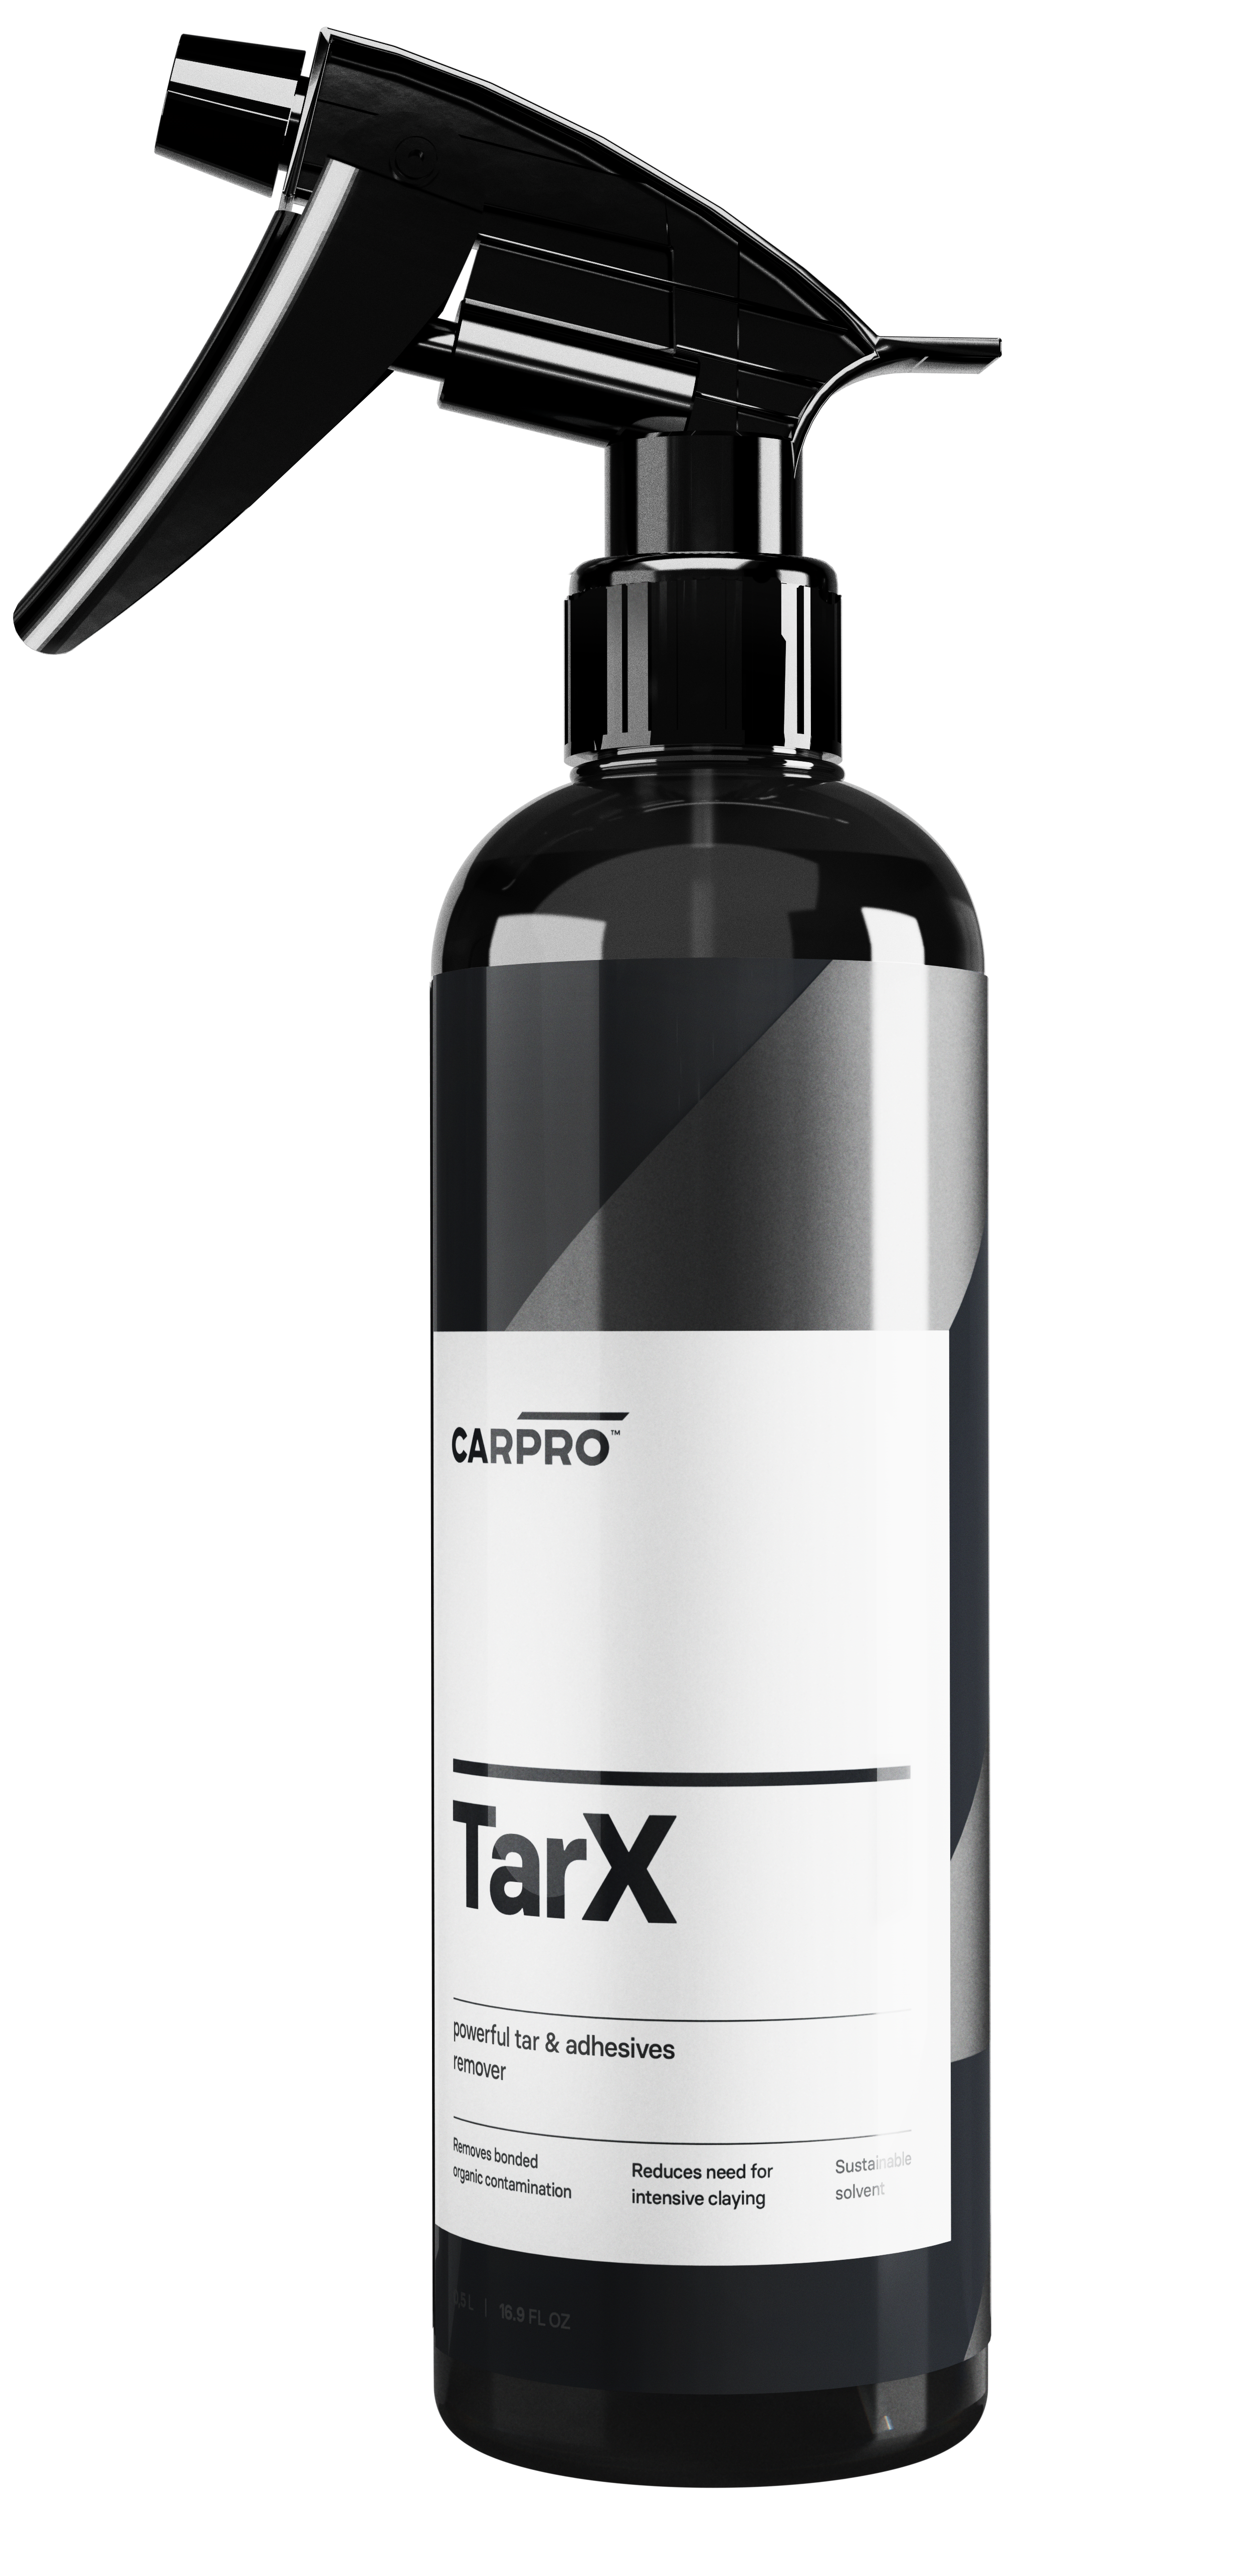 CARPRO TarX 500mL - Tar and adhesives remover